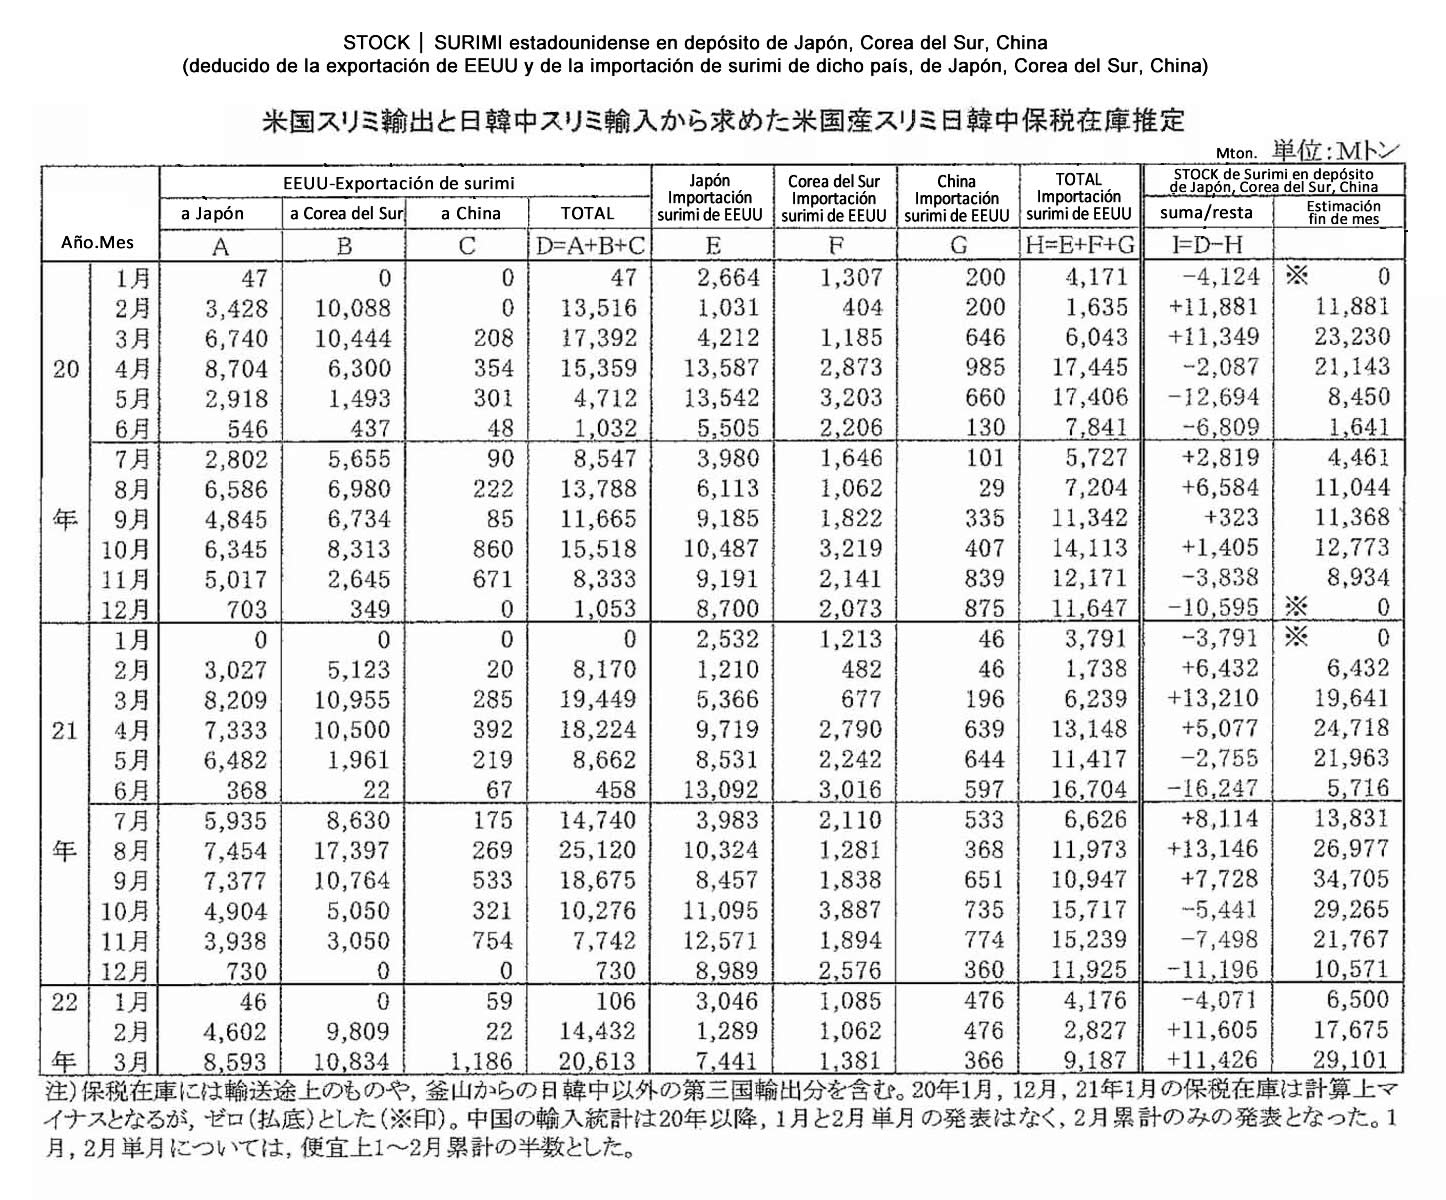 2022051303esp-Stock de surimi estadounidense en deposito de Japon-Corea del Sur-China FIS seafood_media.jpg